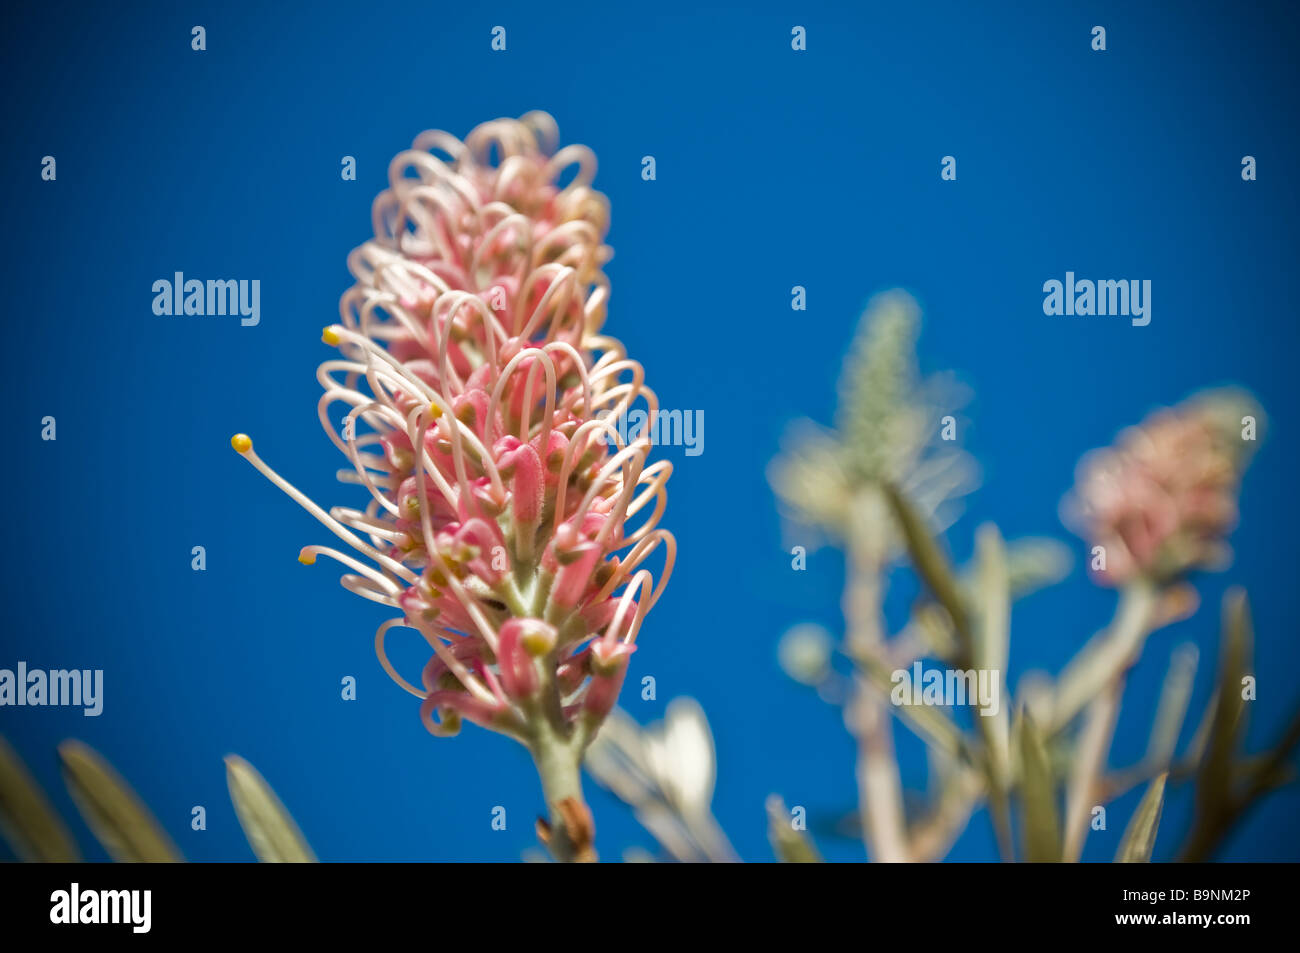 Tipica flora australiana una Red Grevillea Banksii Proteaceaein famiglia autunno in Balmain chiamato anche nelle Hawaii Kahili fiore Foto Stock